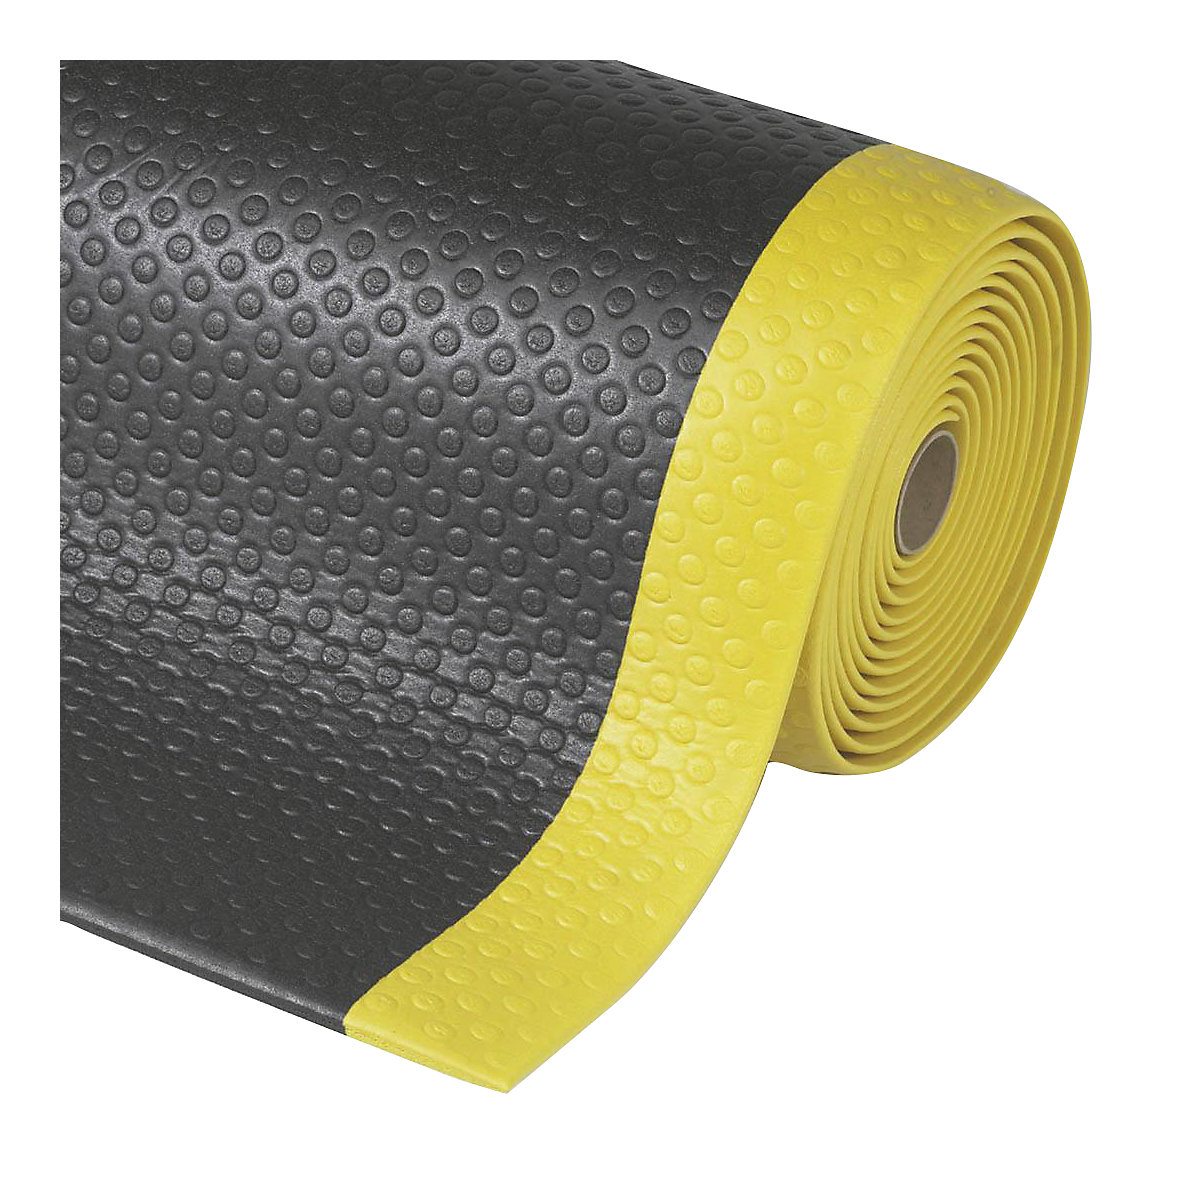 Tapis anti-fatigue Bubble Sof-Tred™ – NOTRAX, prix au m, en mousse de vinyle, noir / jaune, largeur 910 mm-6